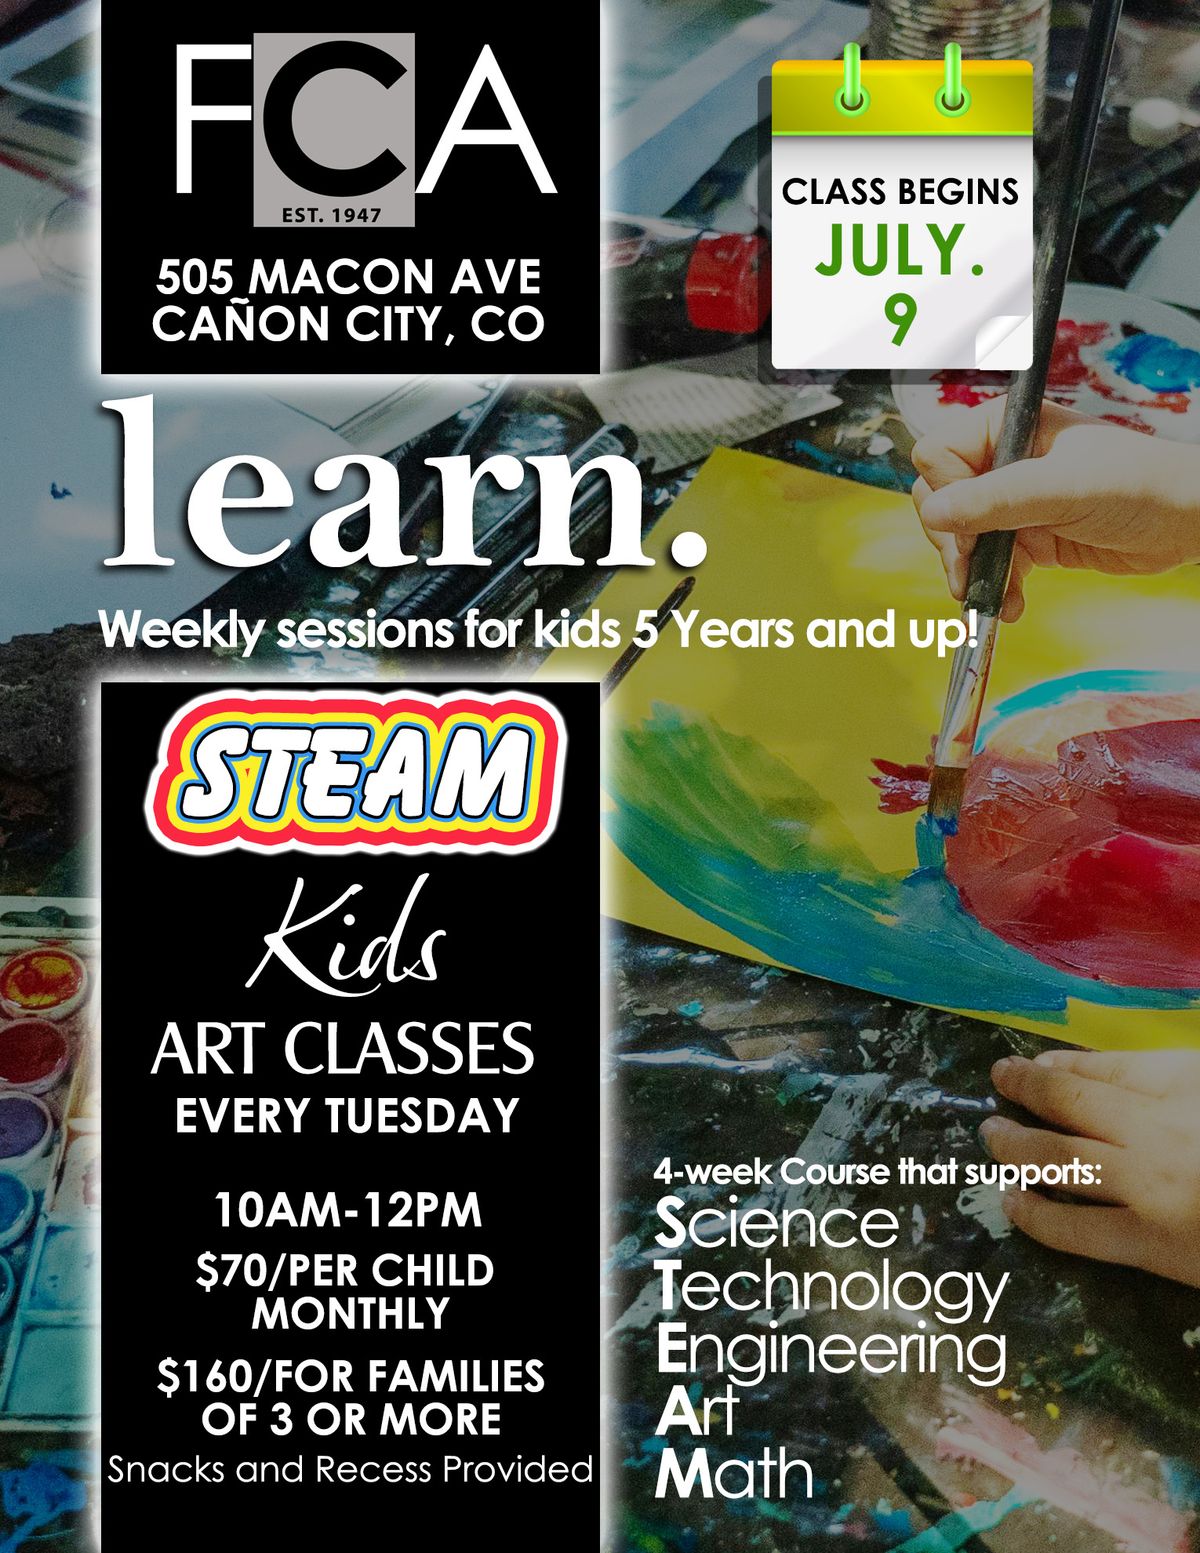 STEAM Kids 4-week Art Course